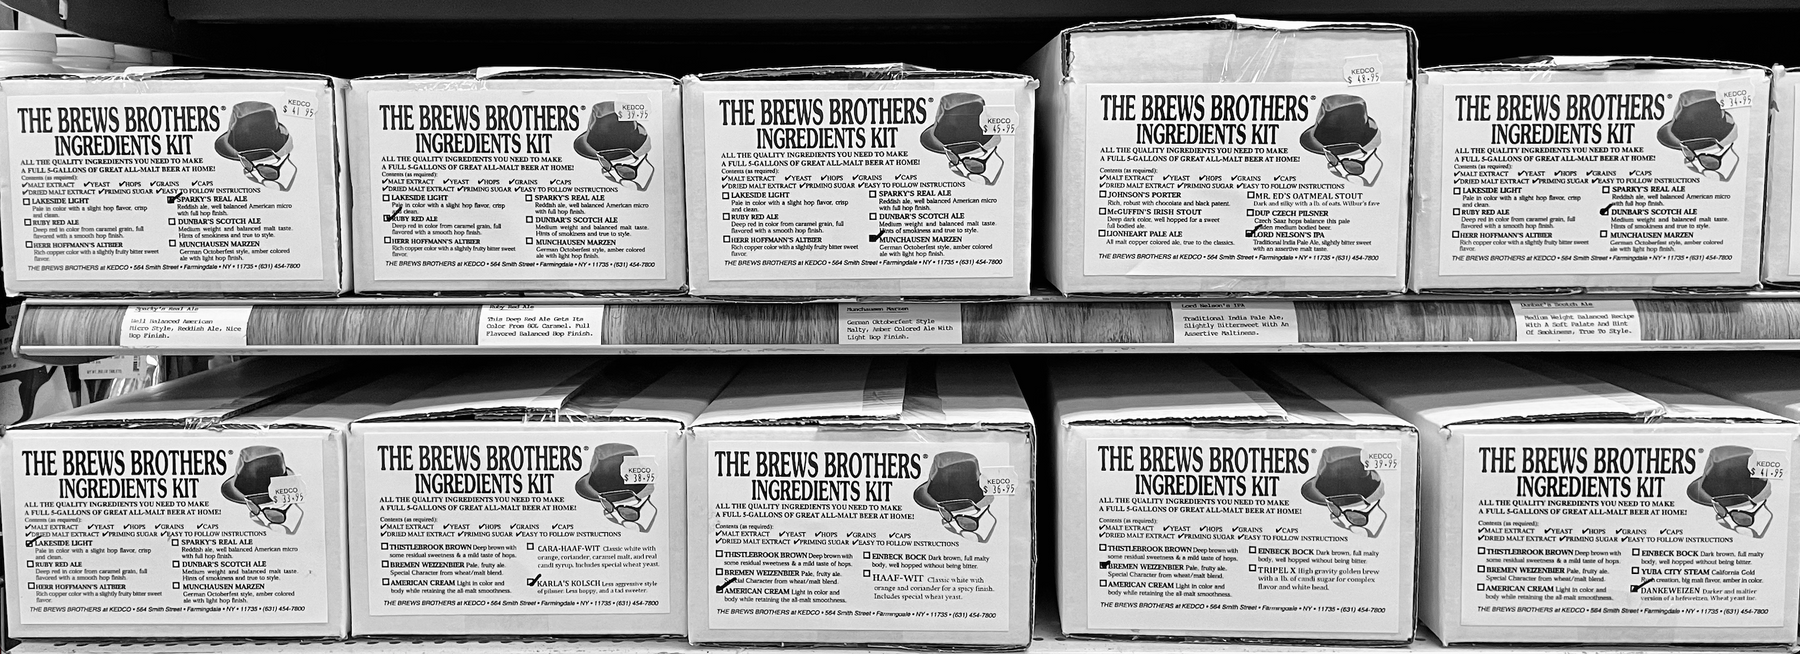 The Brews Brothers ingredient kit.